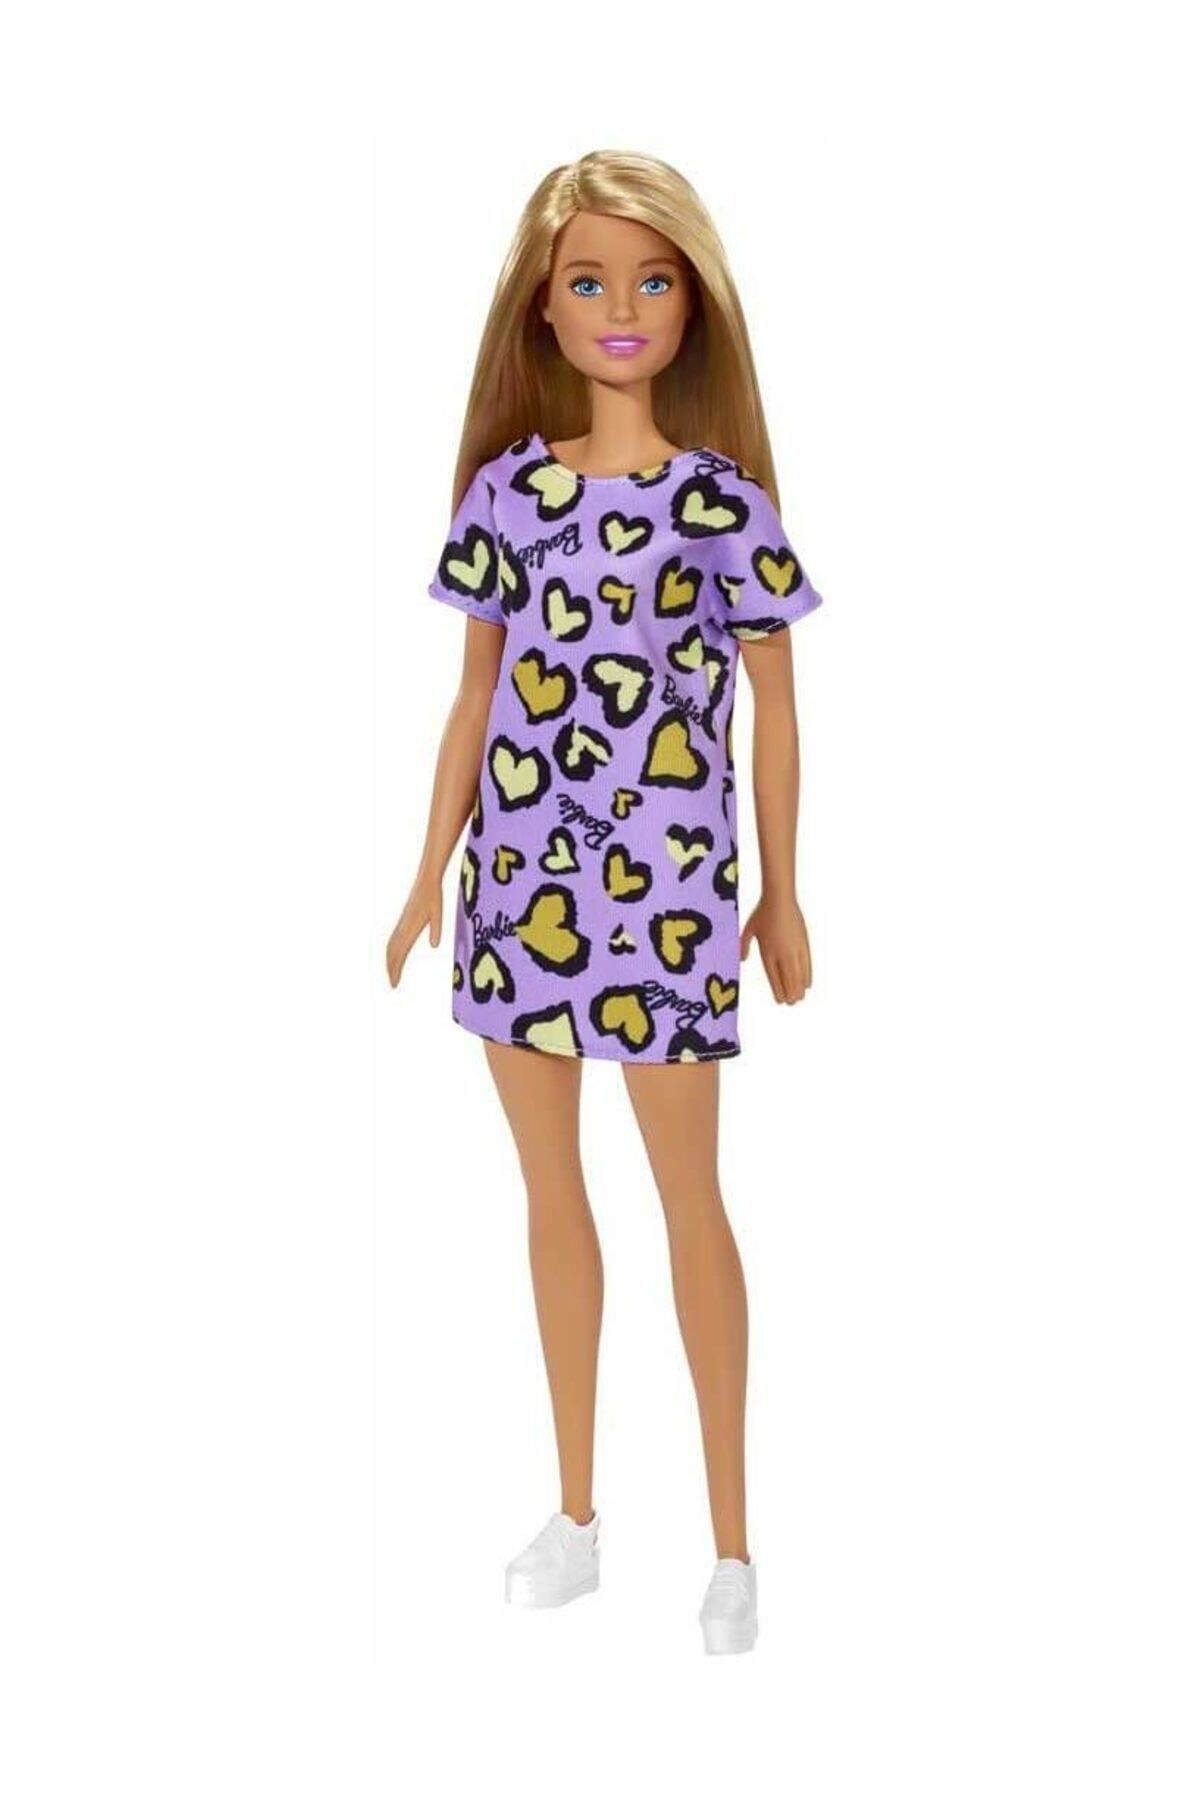 Barbie Şık Barbie - Mor- Kalpli Elbise